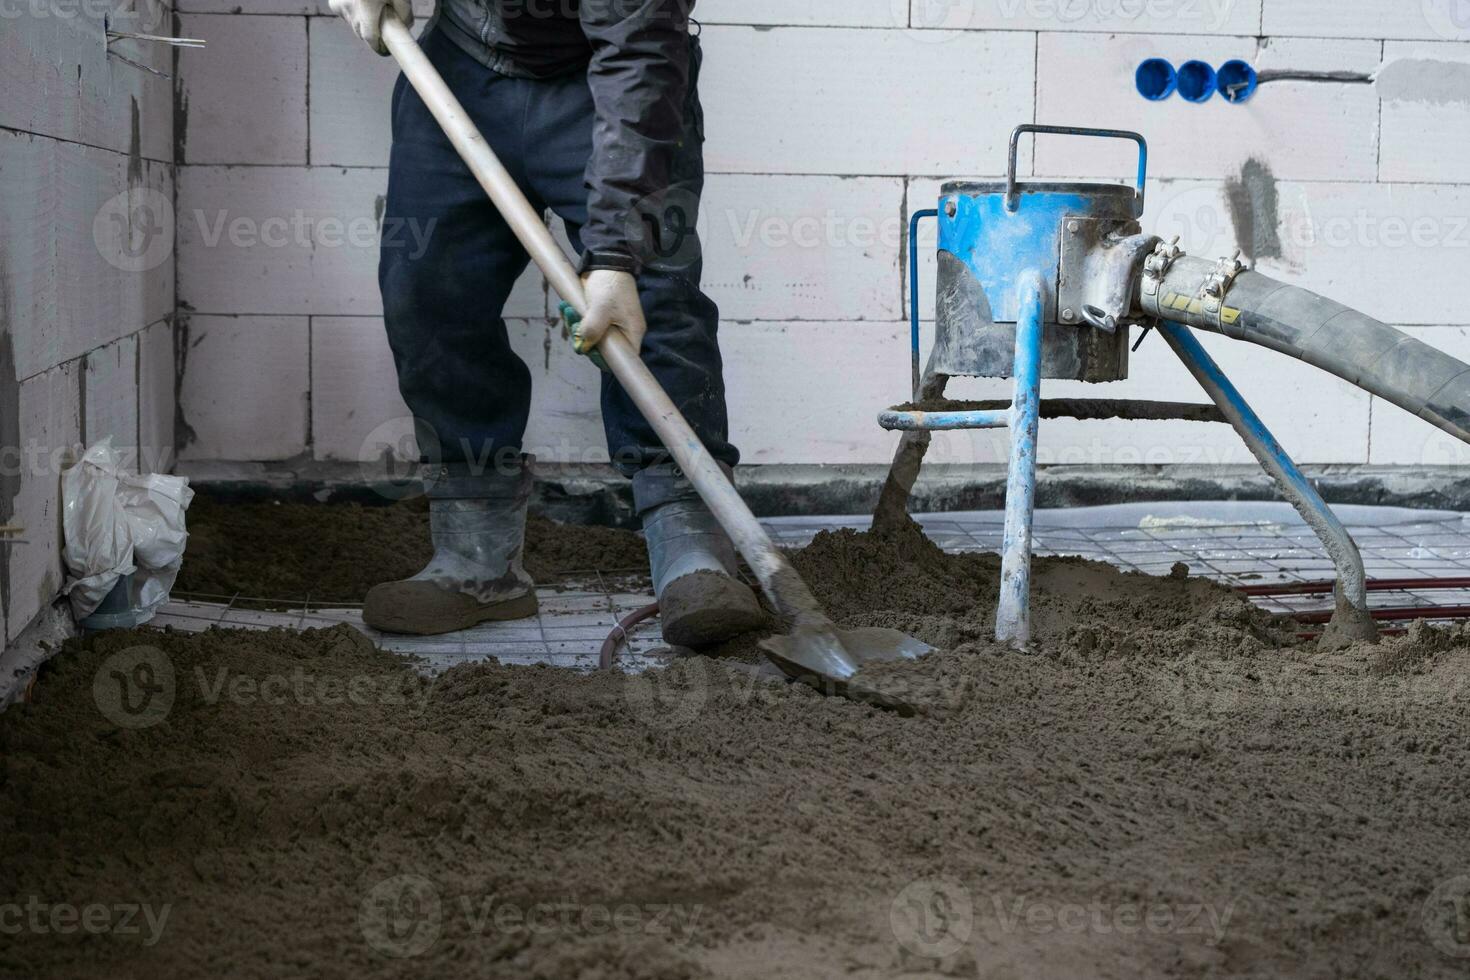 halb Trocken Fußboden Estrich - - ein Arbeiter Schaufeln ein Konstruktion Mischung durch ein Besondere Ärmel zum Zementierung und Nivellierung auf Unterflur Heizung Rohre. foto